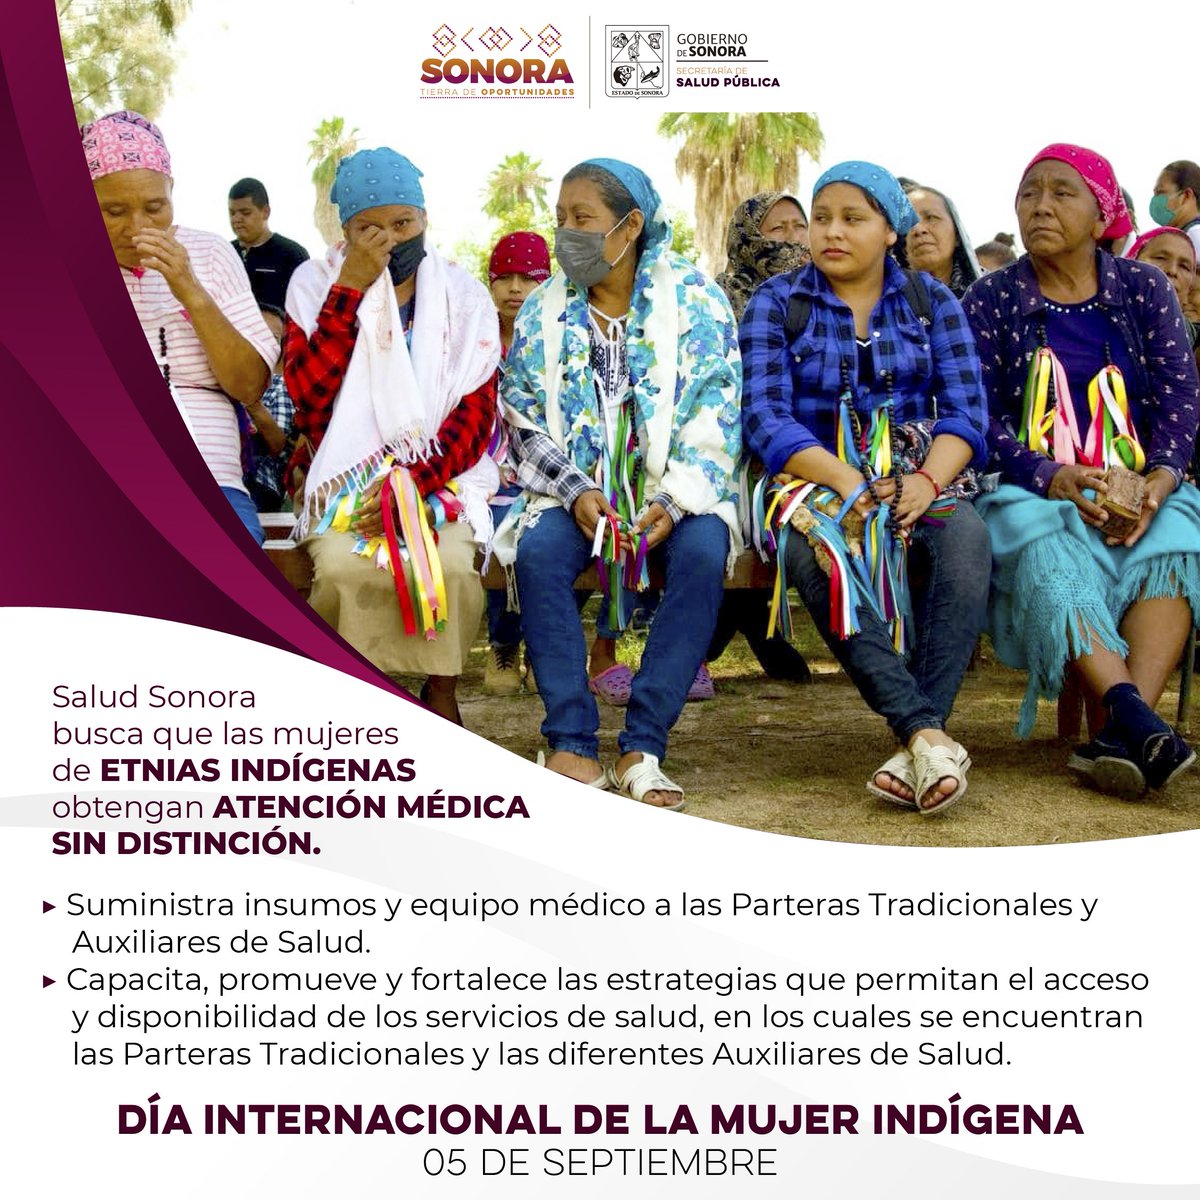 🟡 #DíaInternacionalDeLaMujerIndígena | 

#SaludSonora reitera su compromiso para ofrecer a las mujeres indígenas atención médica de calidad, acercando servicios de salud a sus comunidades y capacitando a sus parteras que son de vital importancia. 

#CompromisosFirmes